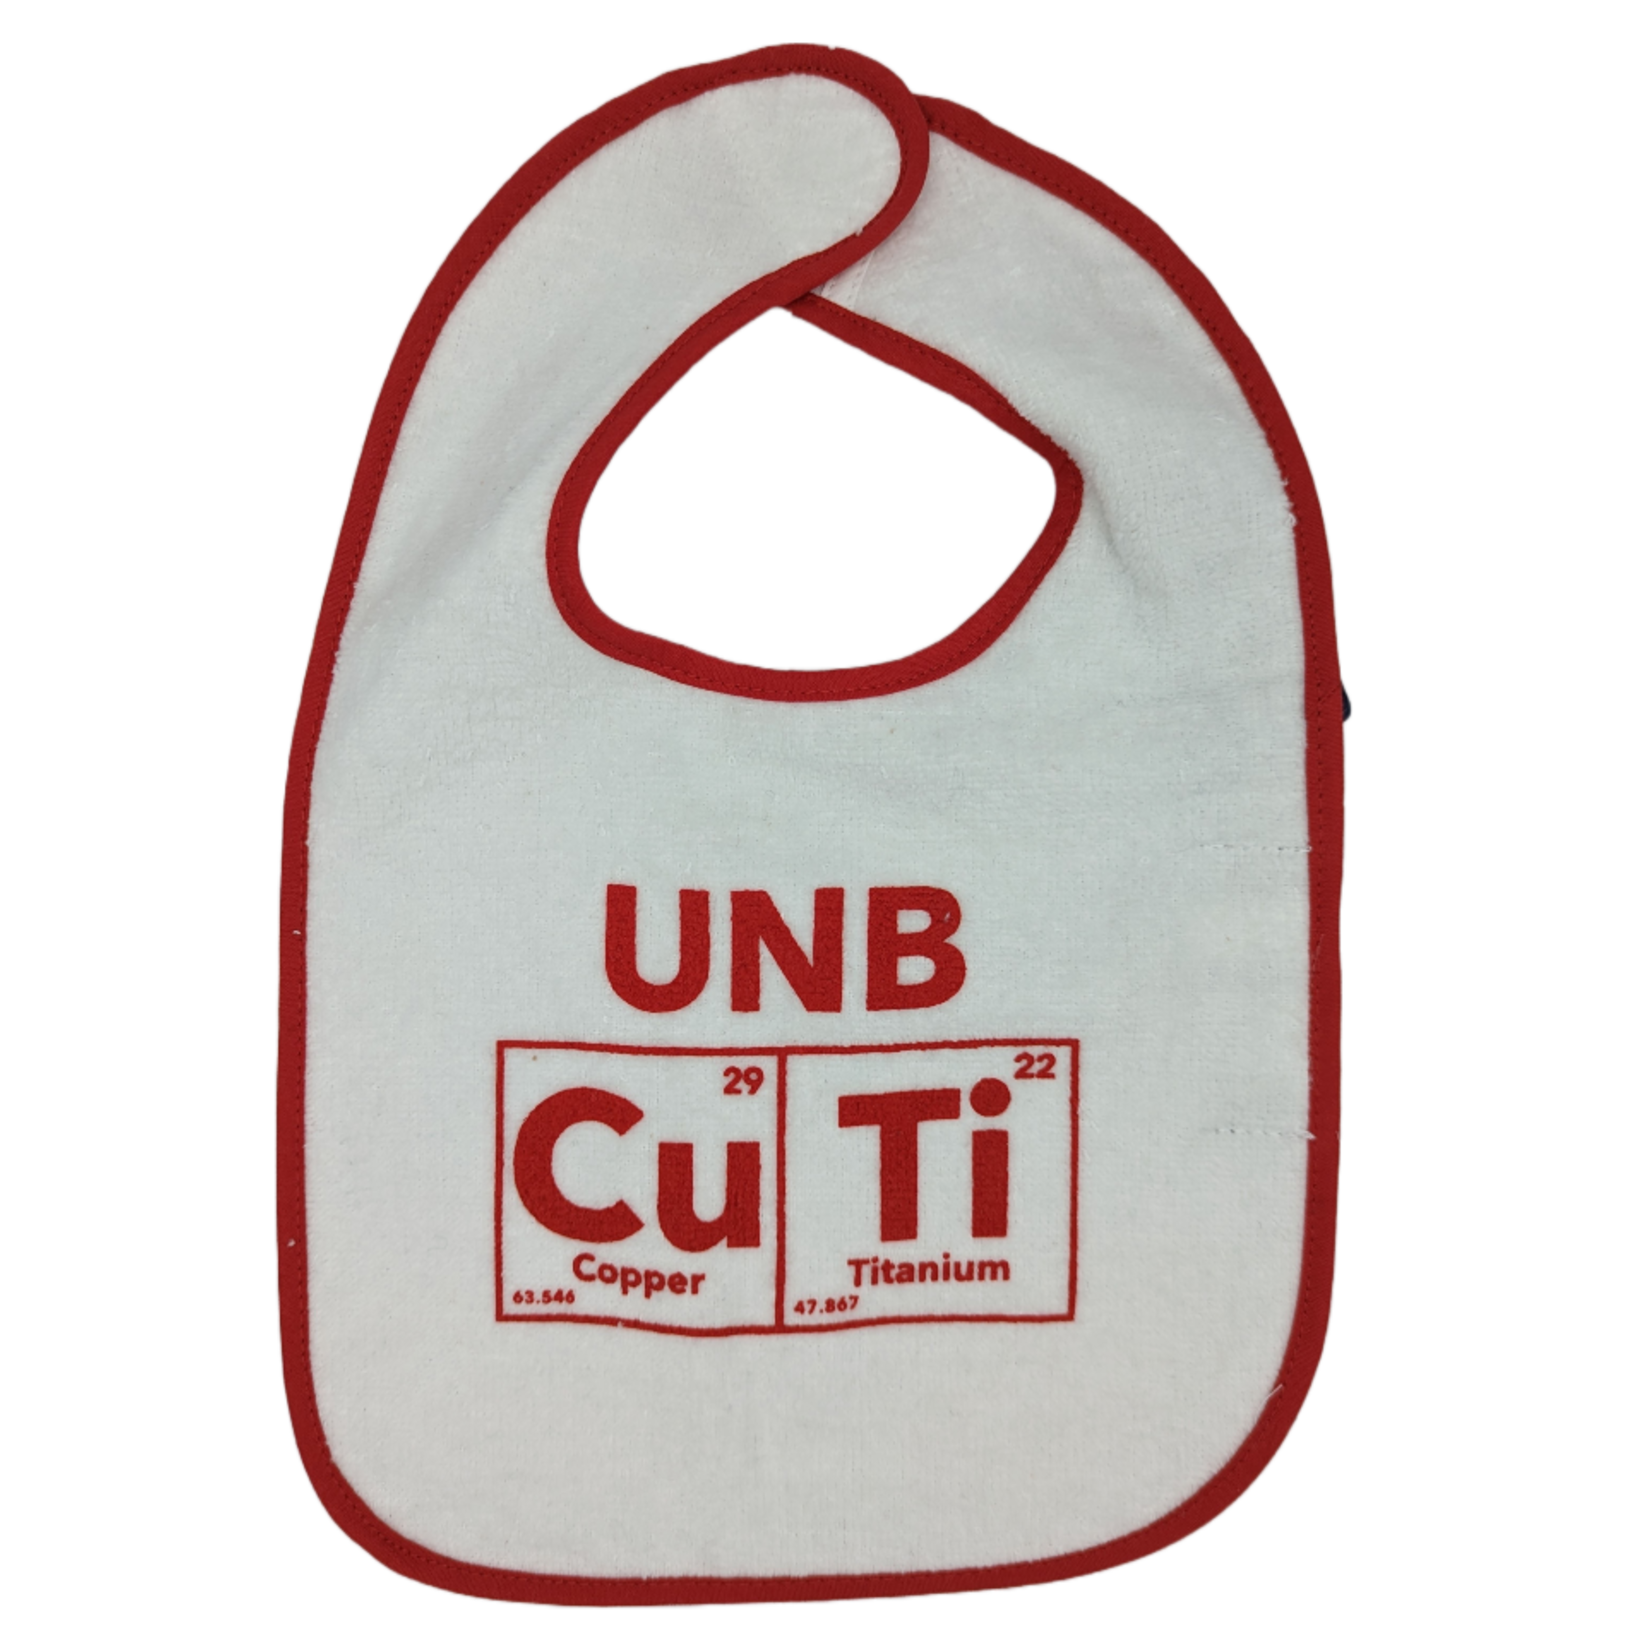 UNB Cu-Ti Bibs